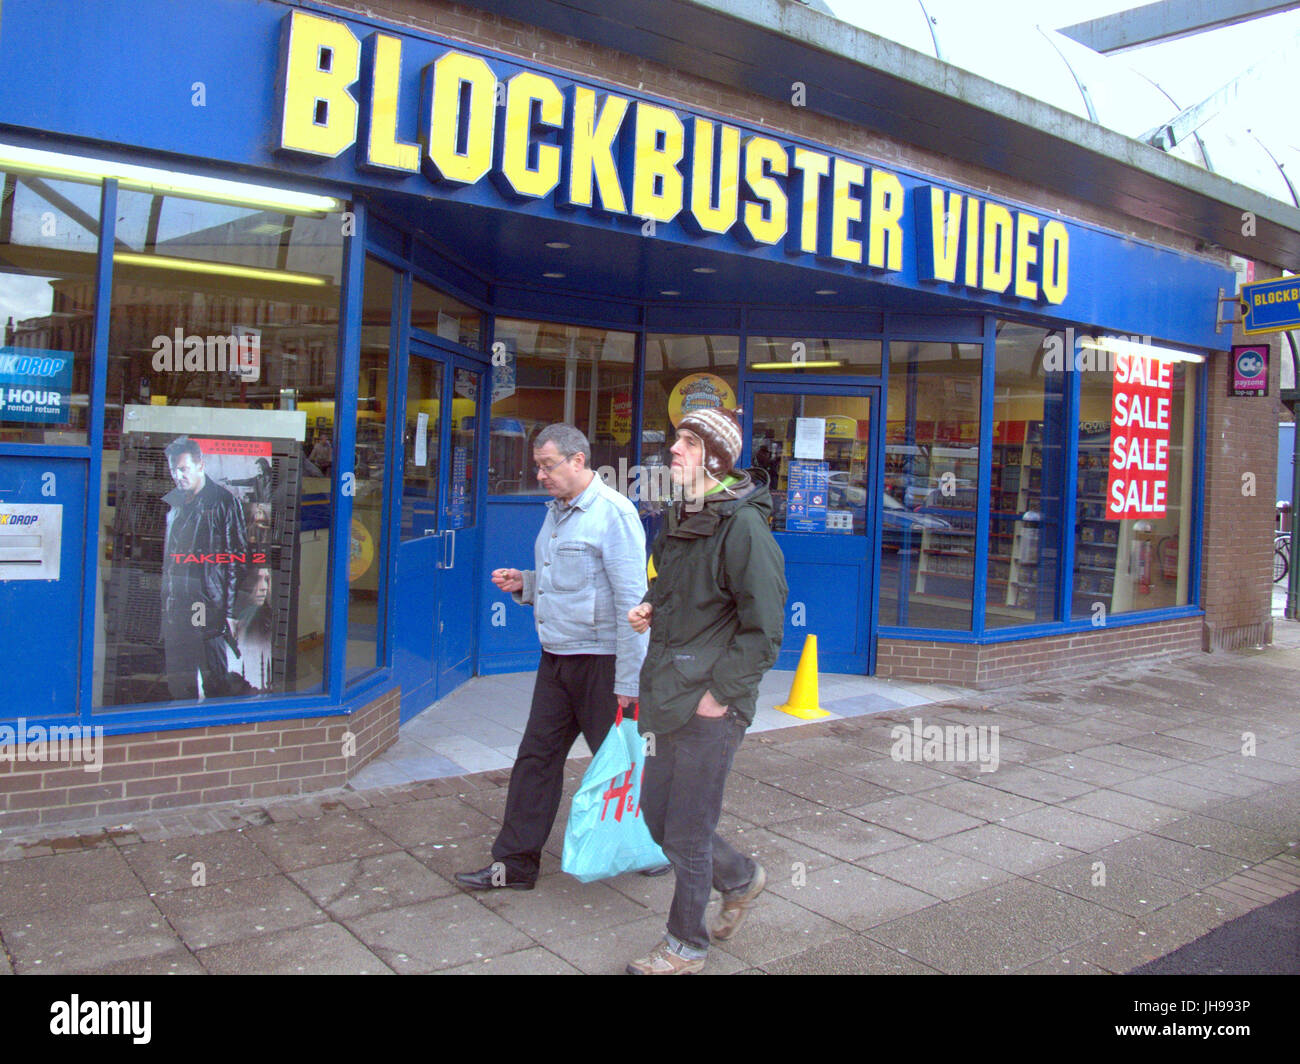 Blockbuster Video street store à Glasgow Partick après l'administration en cours de démantèlement au cours de sa disparition à l'époque Banque D'Images